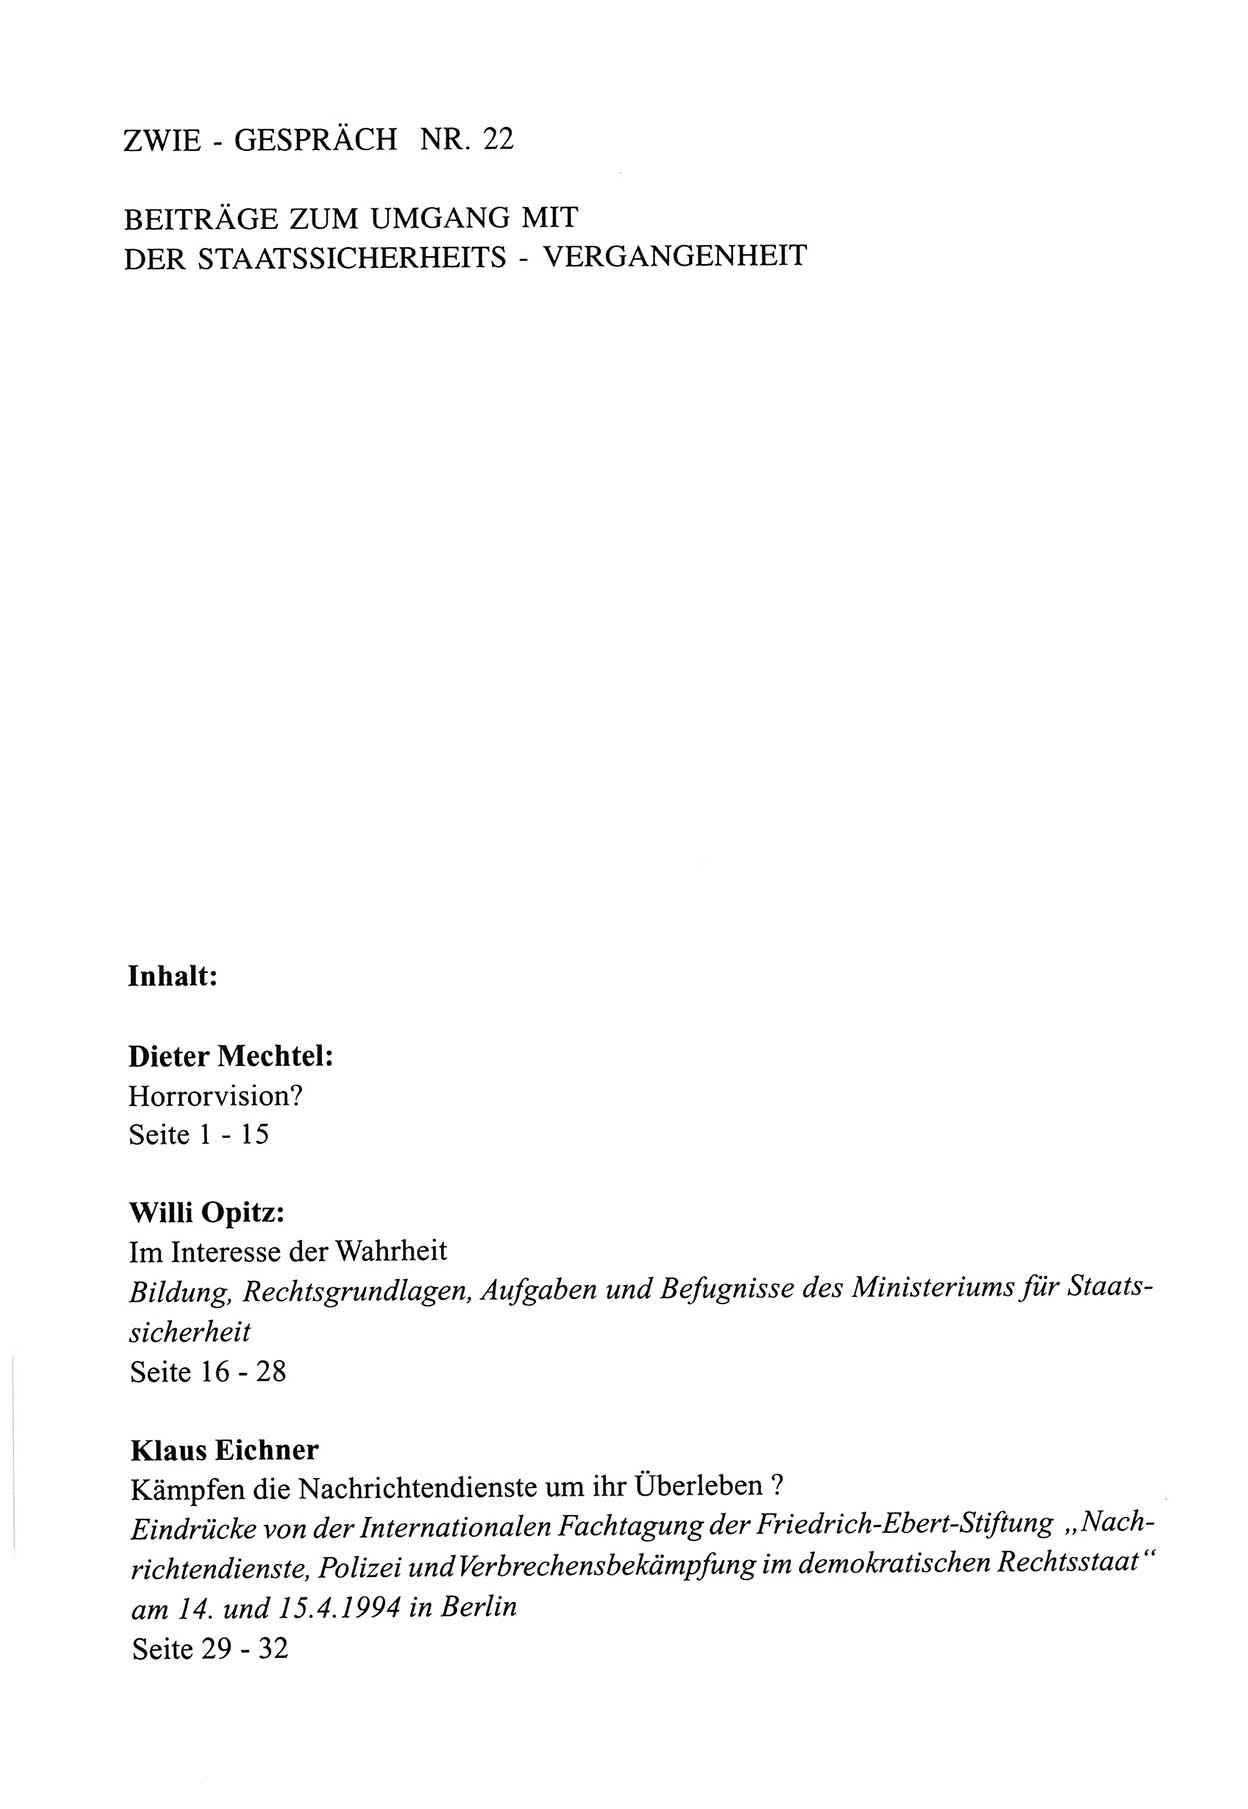 Zwie-Gespräch, Beiträge zum Umgang mit der Staatssicherheits-Vergangenheit [Deutsche Demokratische Republik (DDR)], Ausgabe Nr. 22, Berlin 1994, Seite 33 (Zwie-Gespr. Ausg. 22 1994, S. 33)